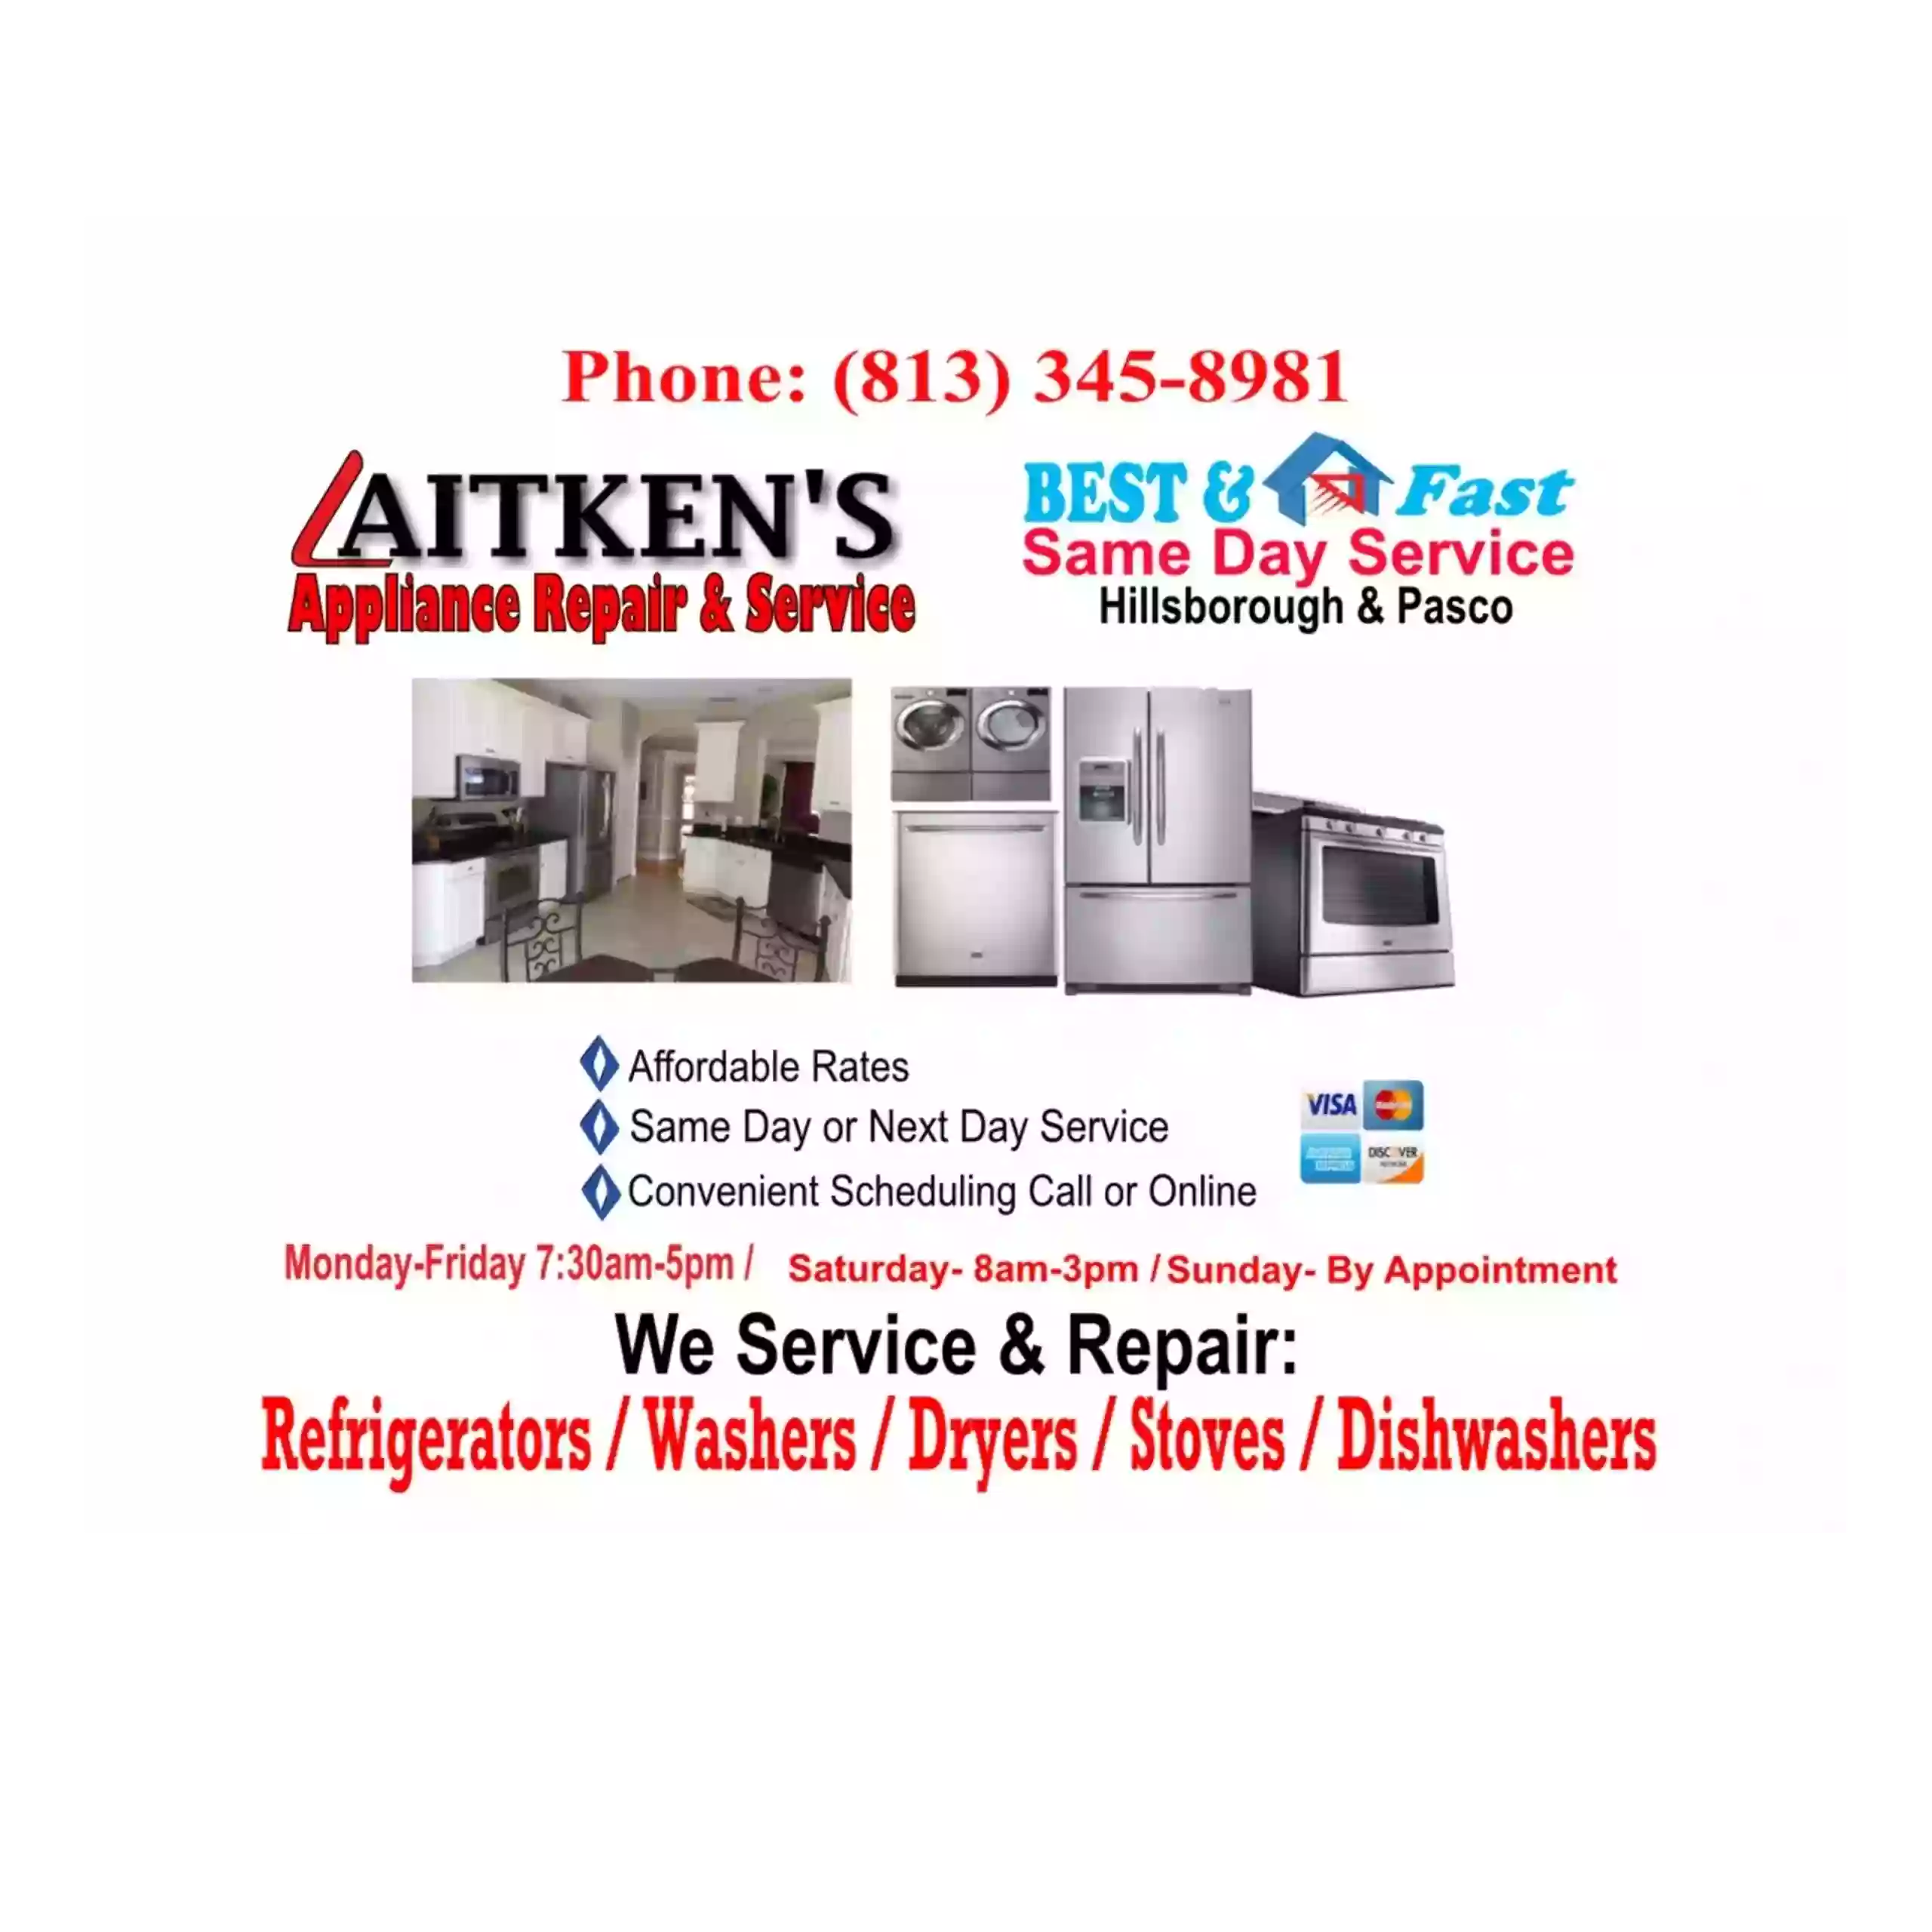 AITKEN'S Appliance Repair Service